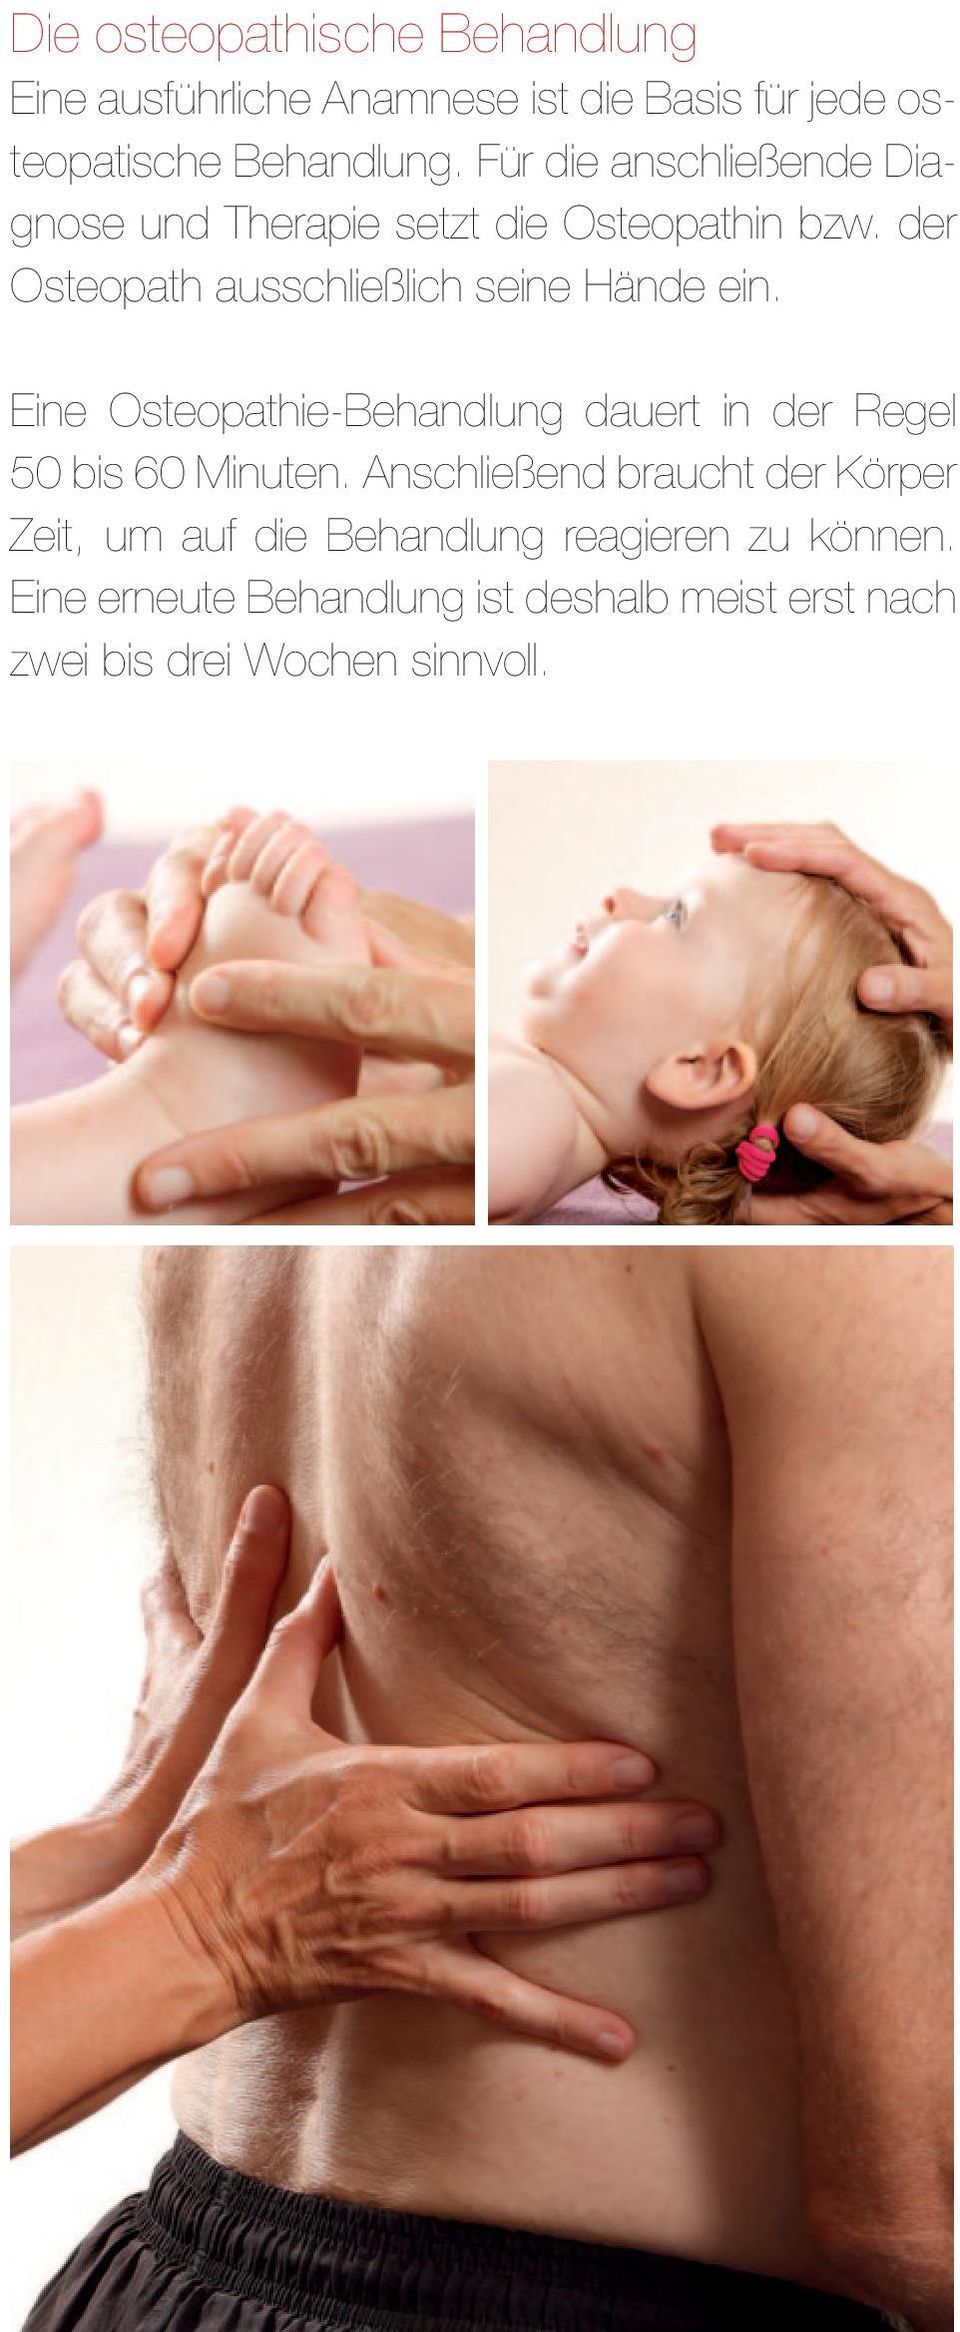 der Osteopath ausschließlich seine Hände ein. Eine Osteopathie-Behandlung dauert in der Regel 50 bis 60 Minuten.